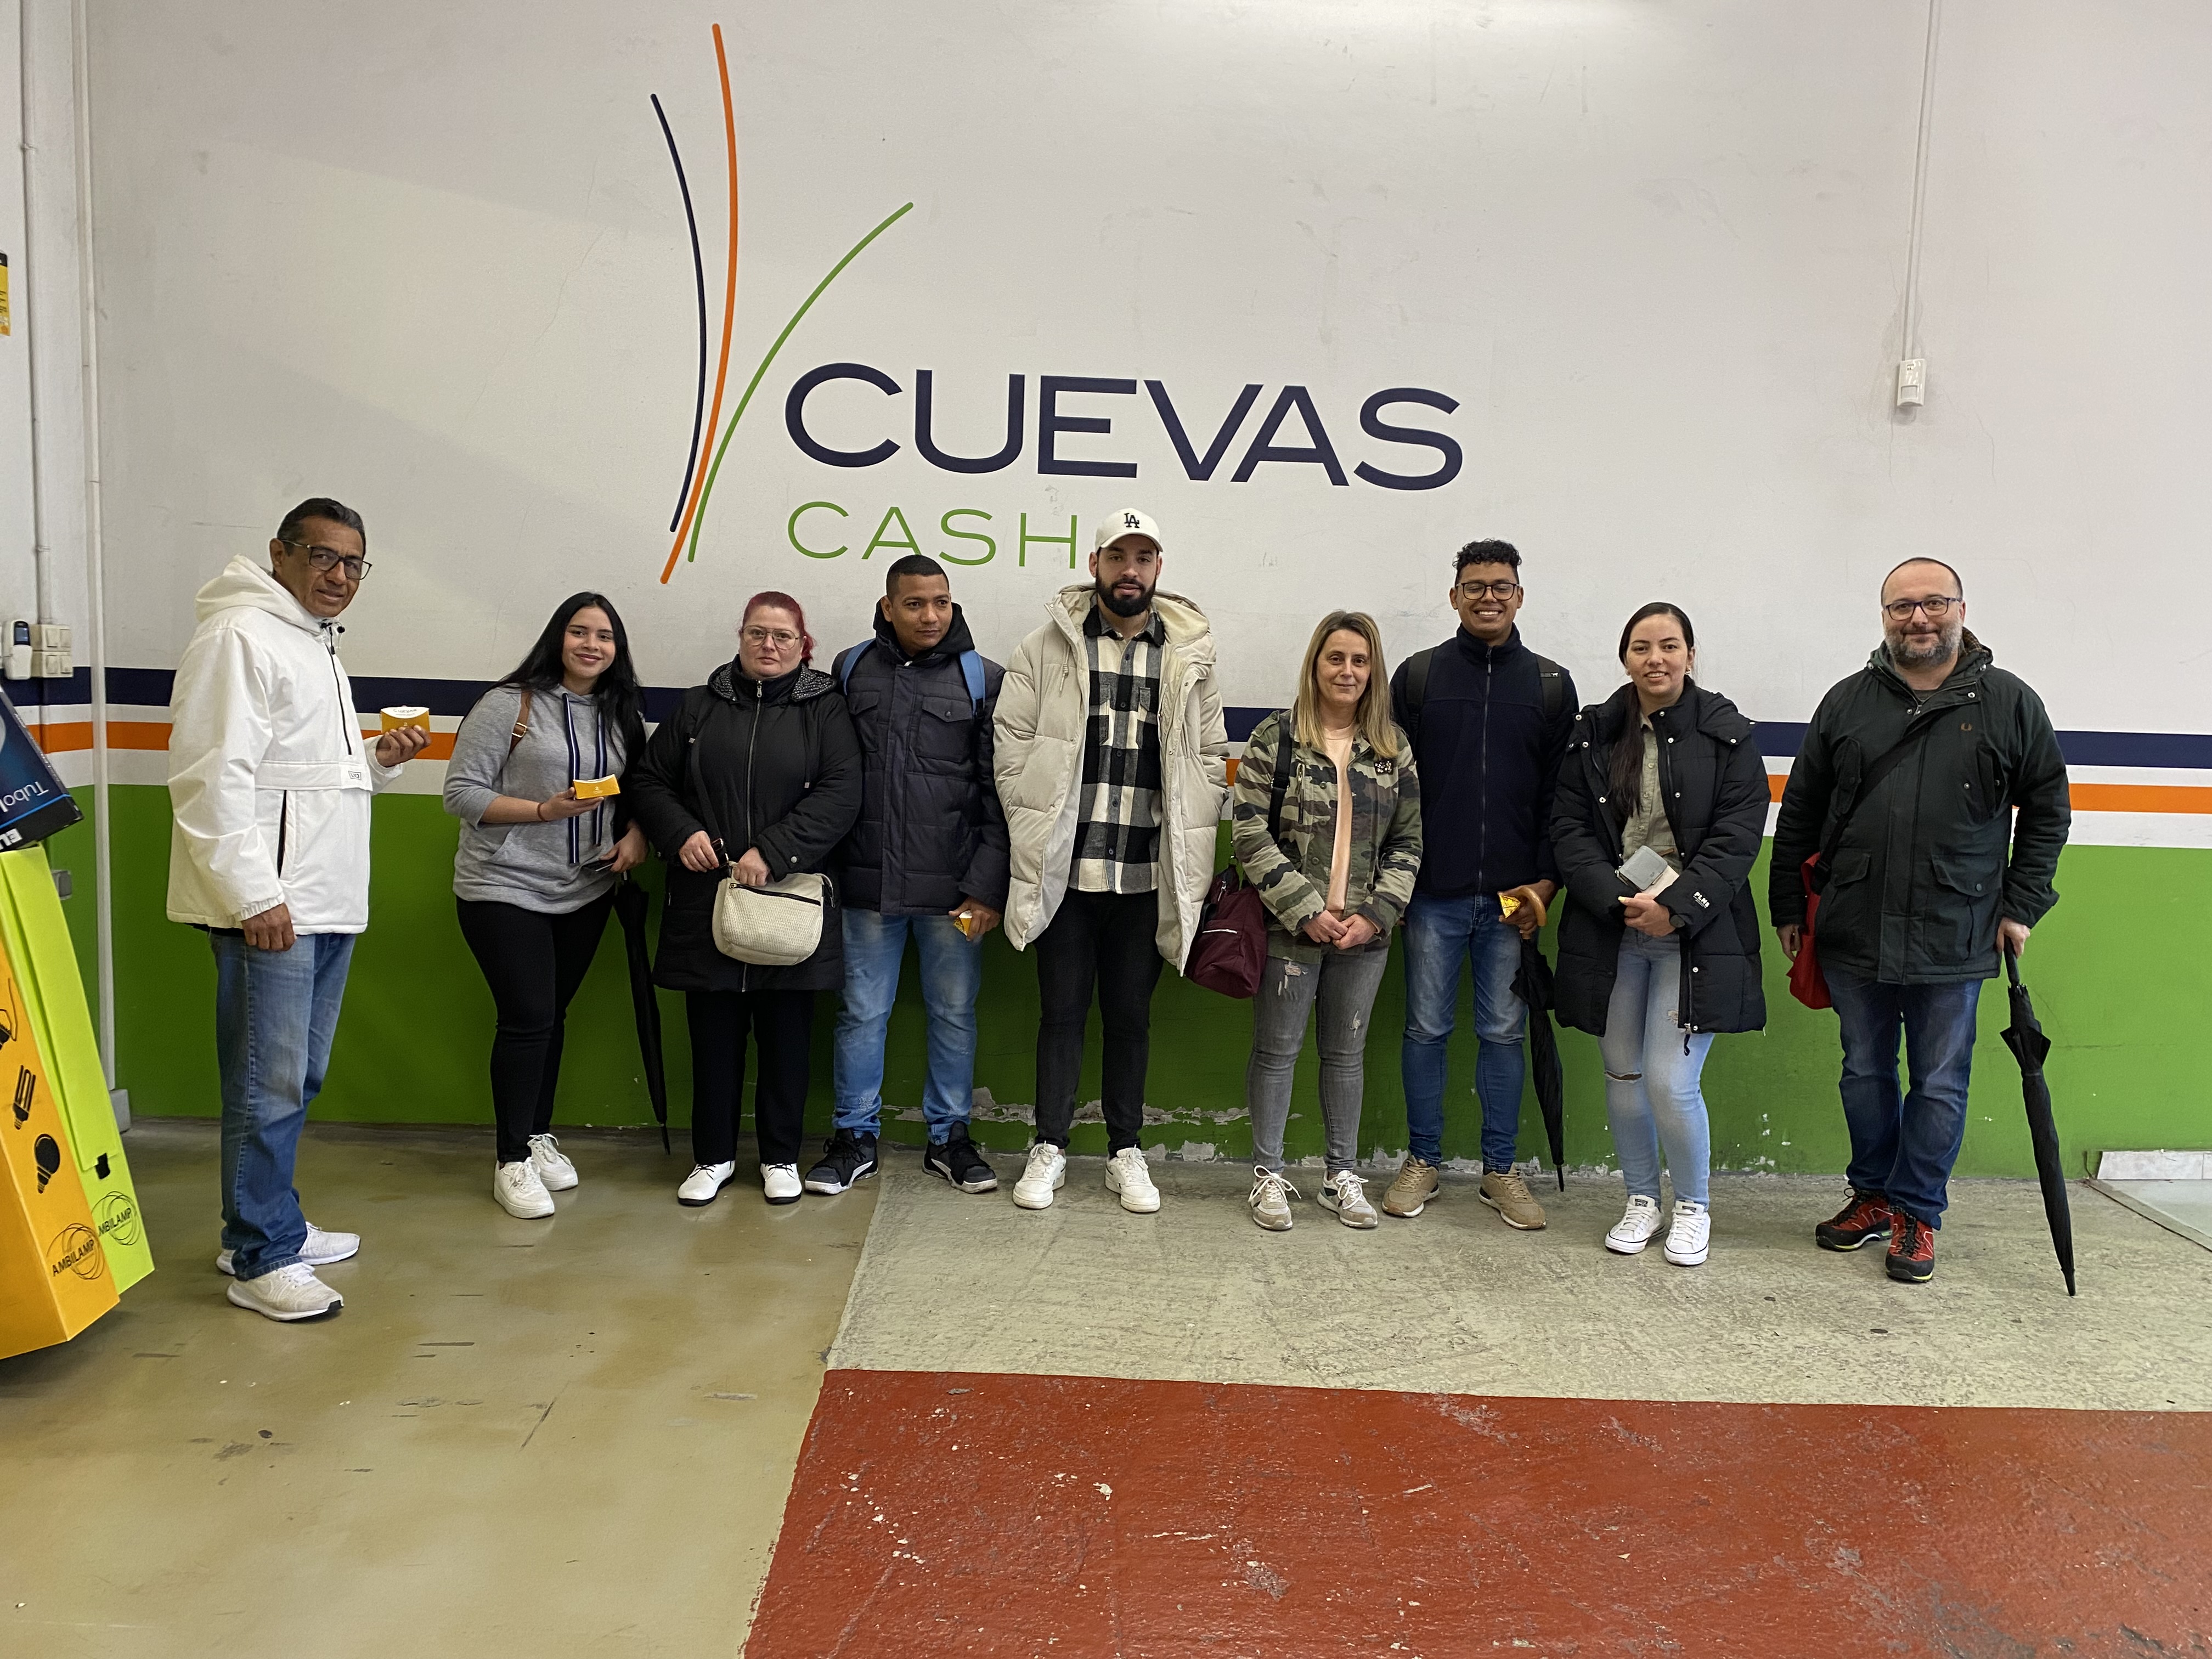 CUEVAS CASH OTERO PEDRAYO RECIBE A FUTUROS TRABALLADORES DE COCIÑA 